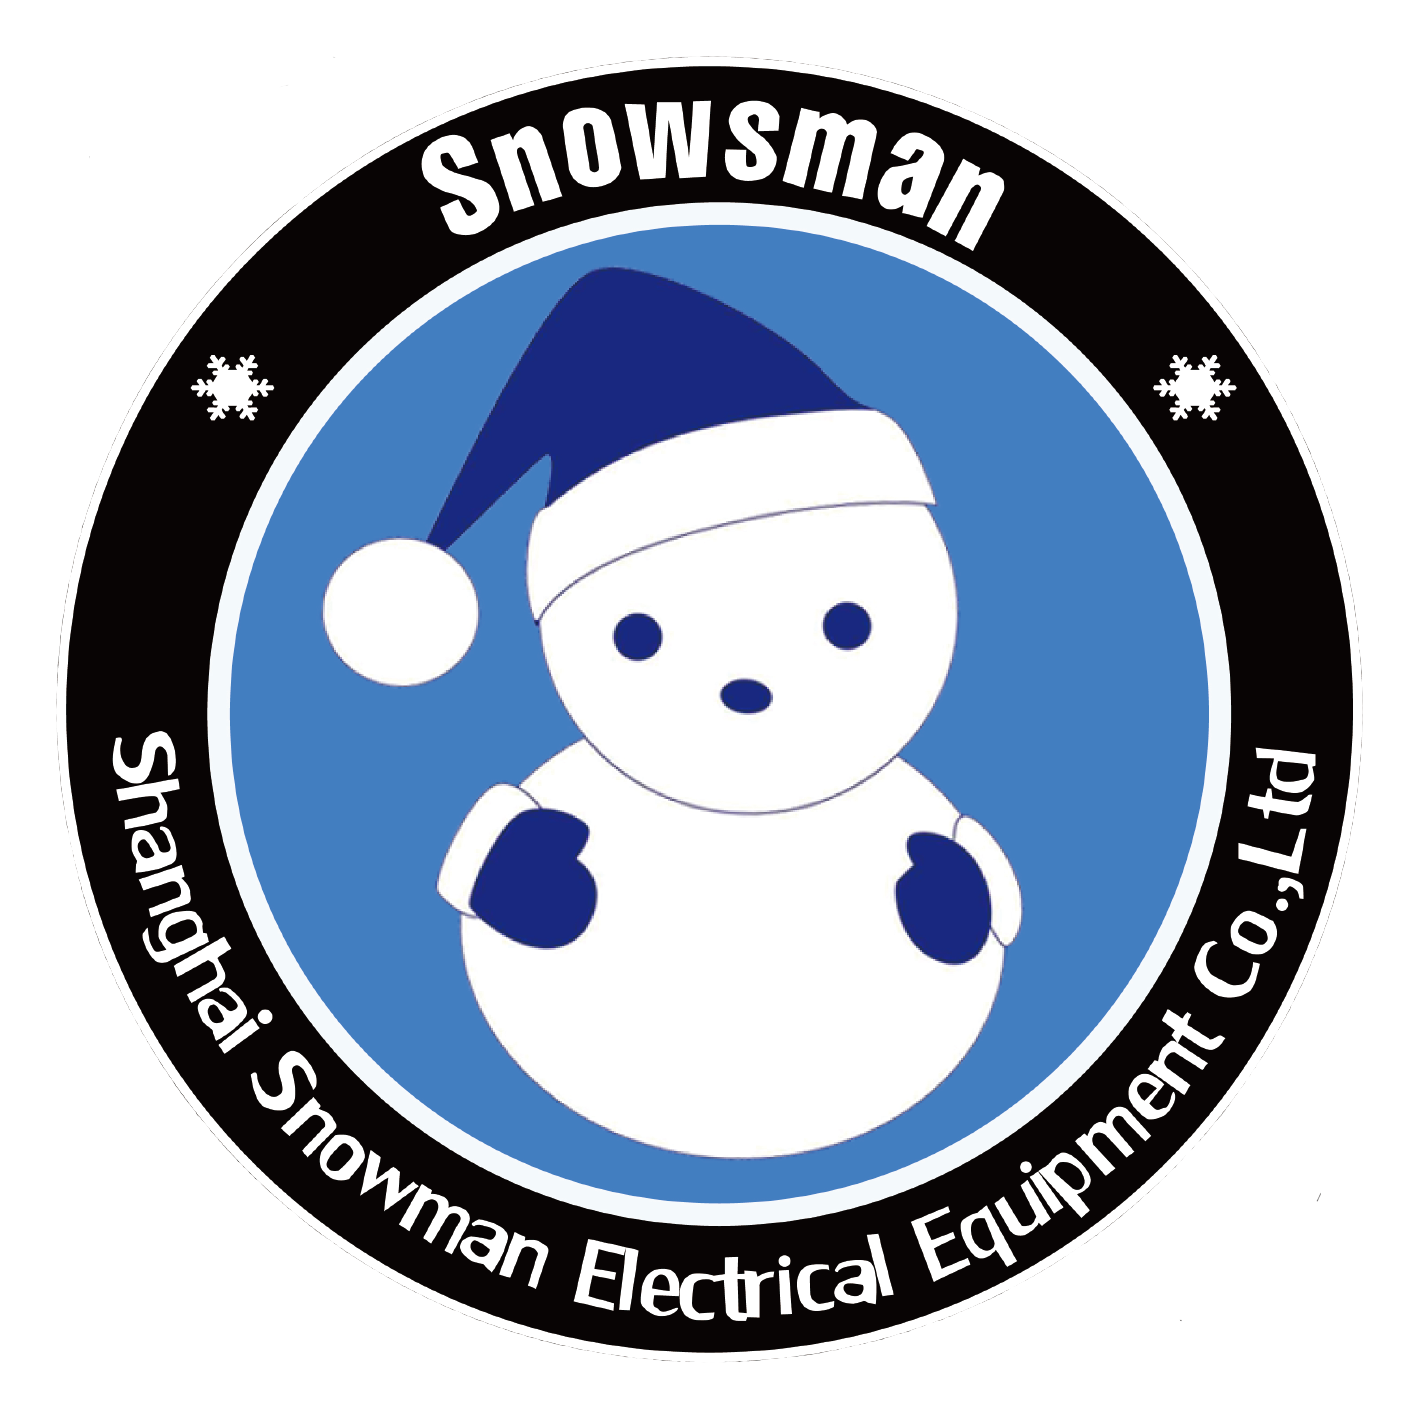 Shanghai Snowman Electrical Equipment Co., Ltd